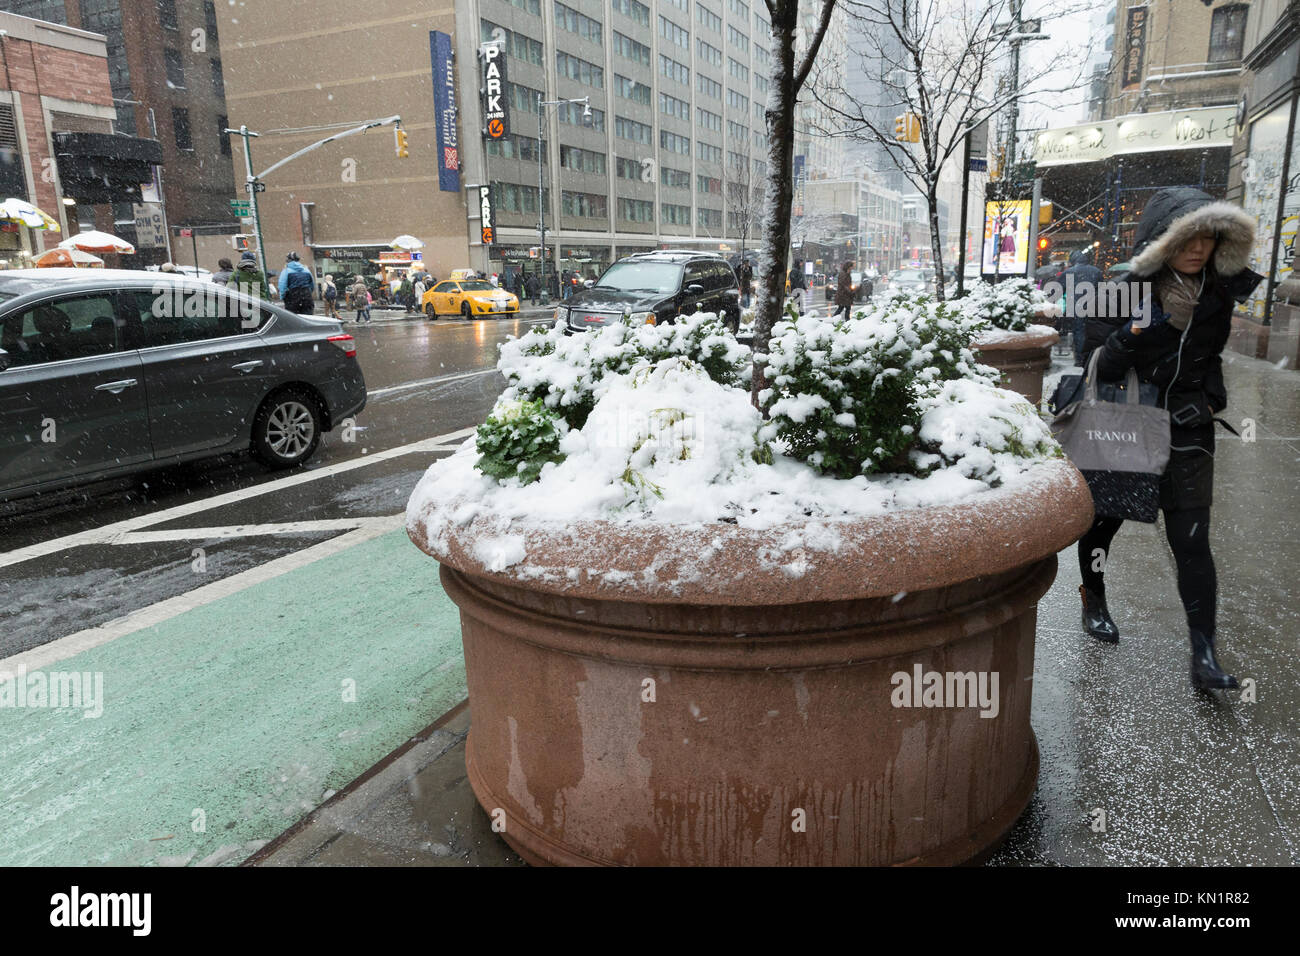 New York, NY - Dezember 9, 2017: Erster Schnee im Winter 2017 in New York umfasst 8. Avenue in Manhattan Credit: Lev radin/Alamy leben Nachrichten Stockfoto